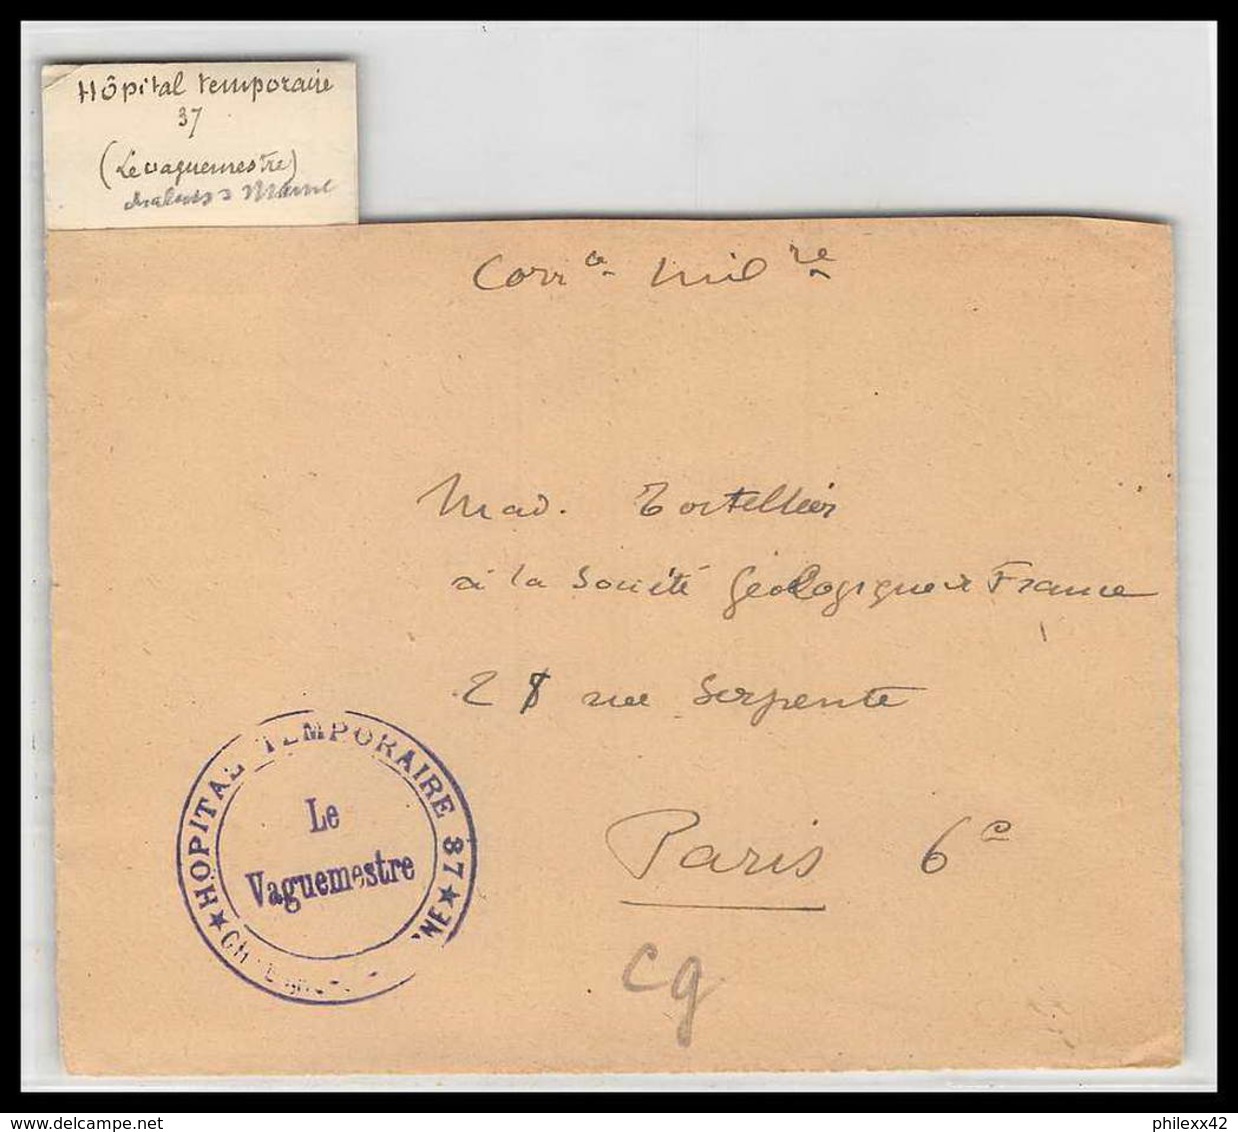 52701 Chalons Sur Marne Hopital Temporaire 37 Sante Guerre 1914/1918 War Devant De Lettre Front Cover - WW I